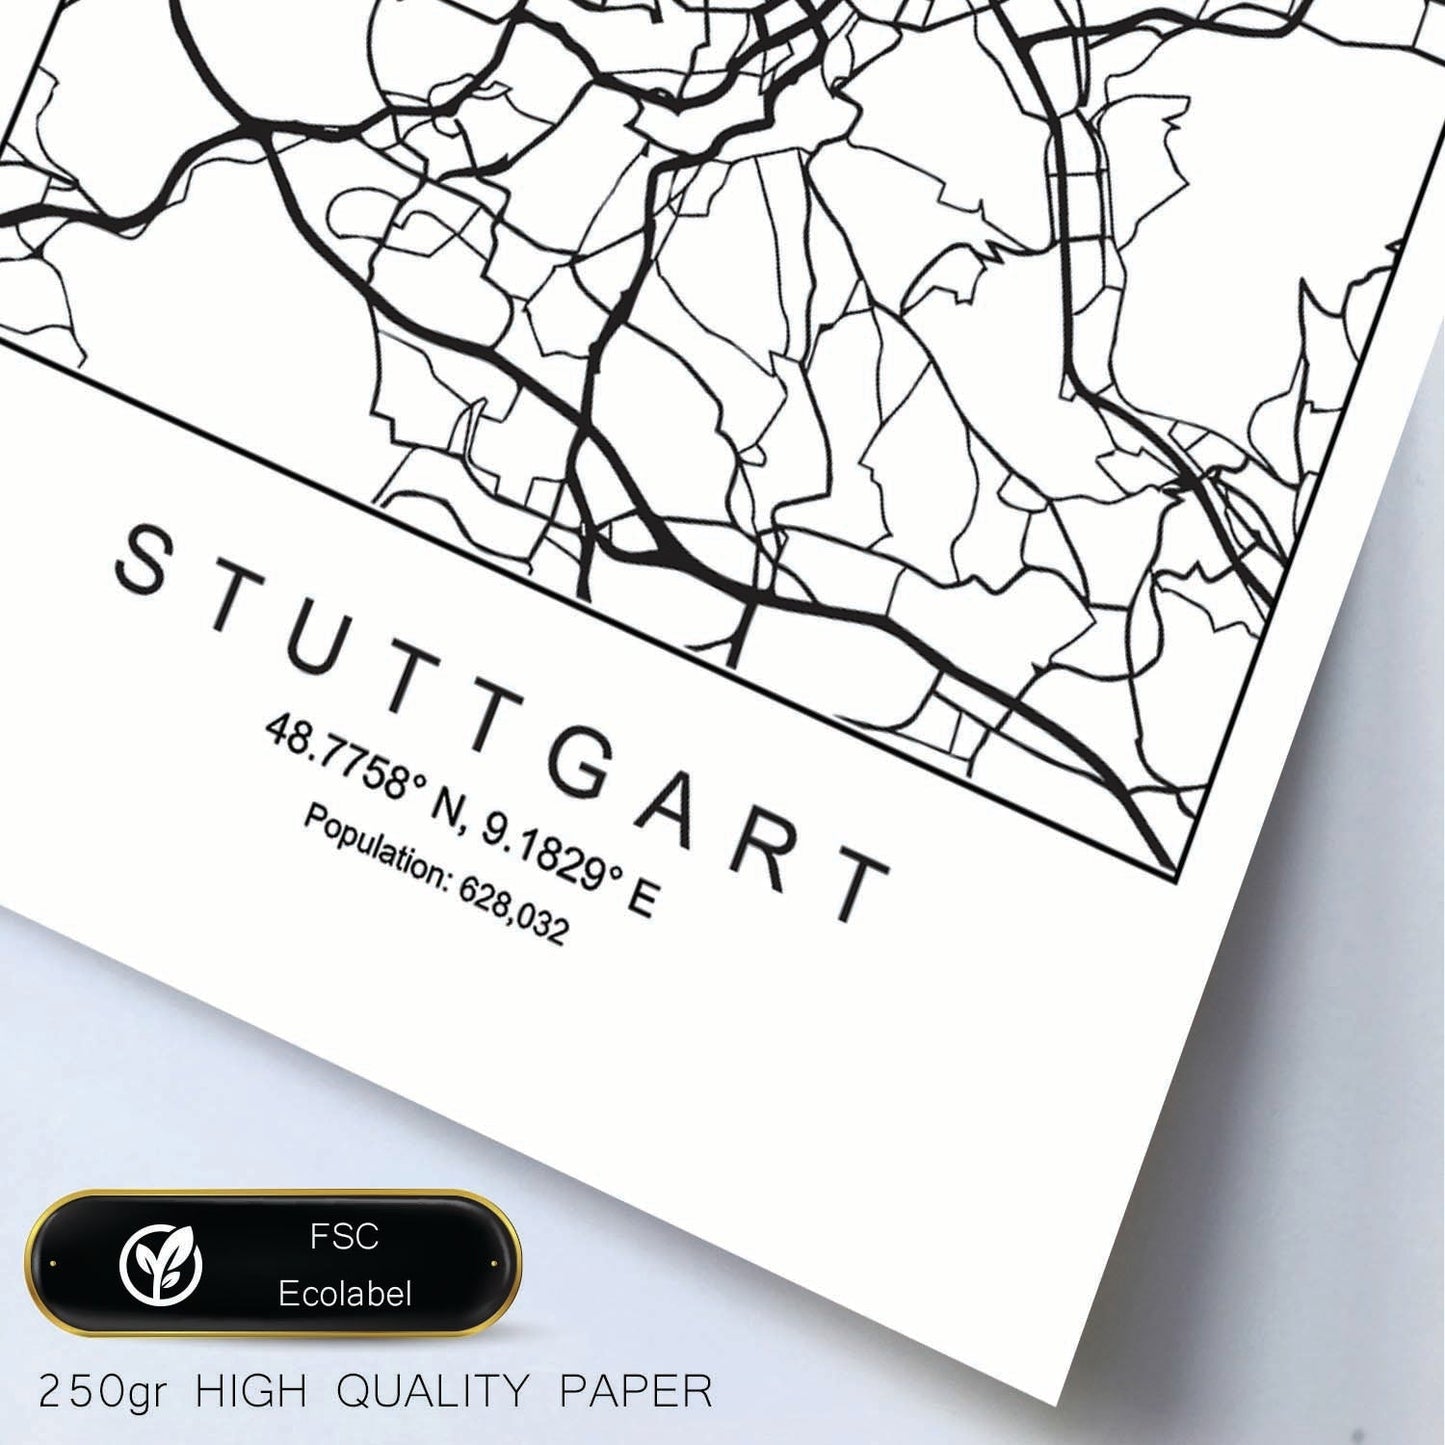 Lámina Mapa de la Ciudad Stuttgart Estilo nordico en Blanco y negro.-Artwork-Nacnic-Nacnic Estudio SL